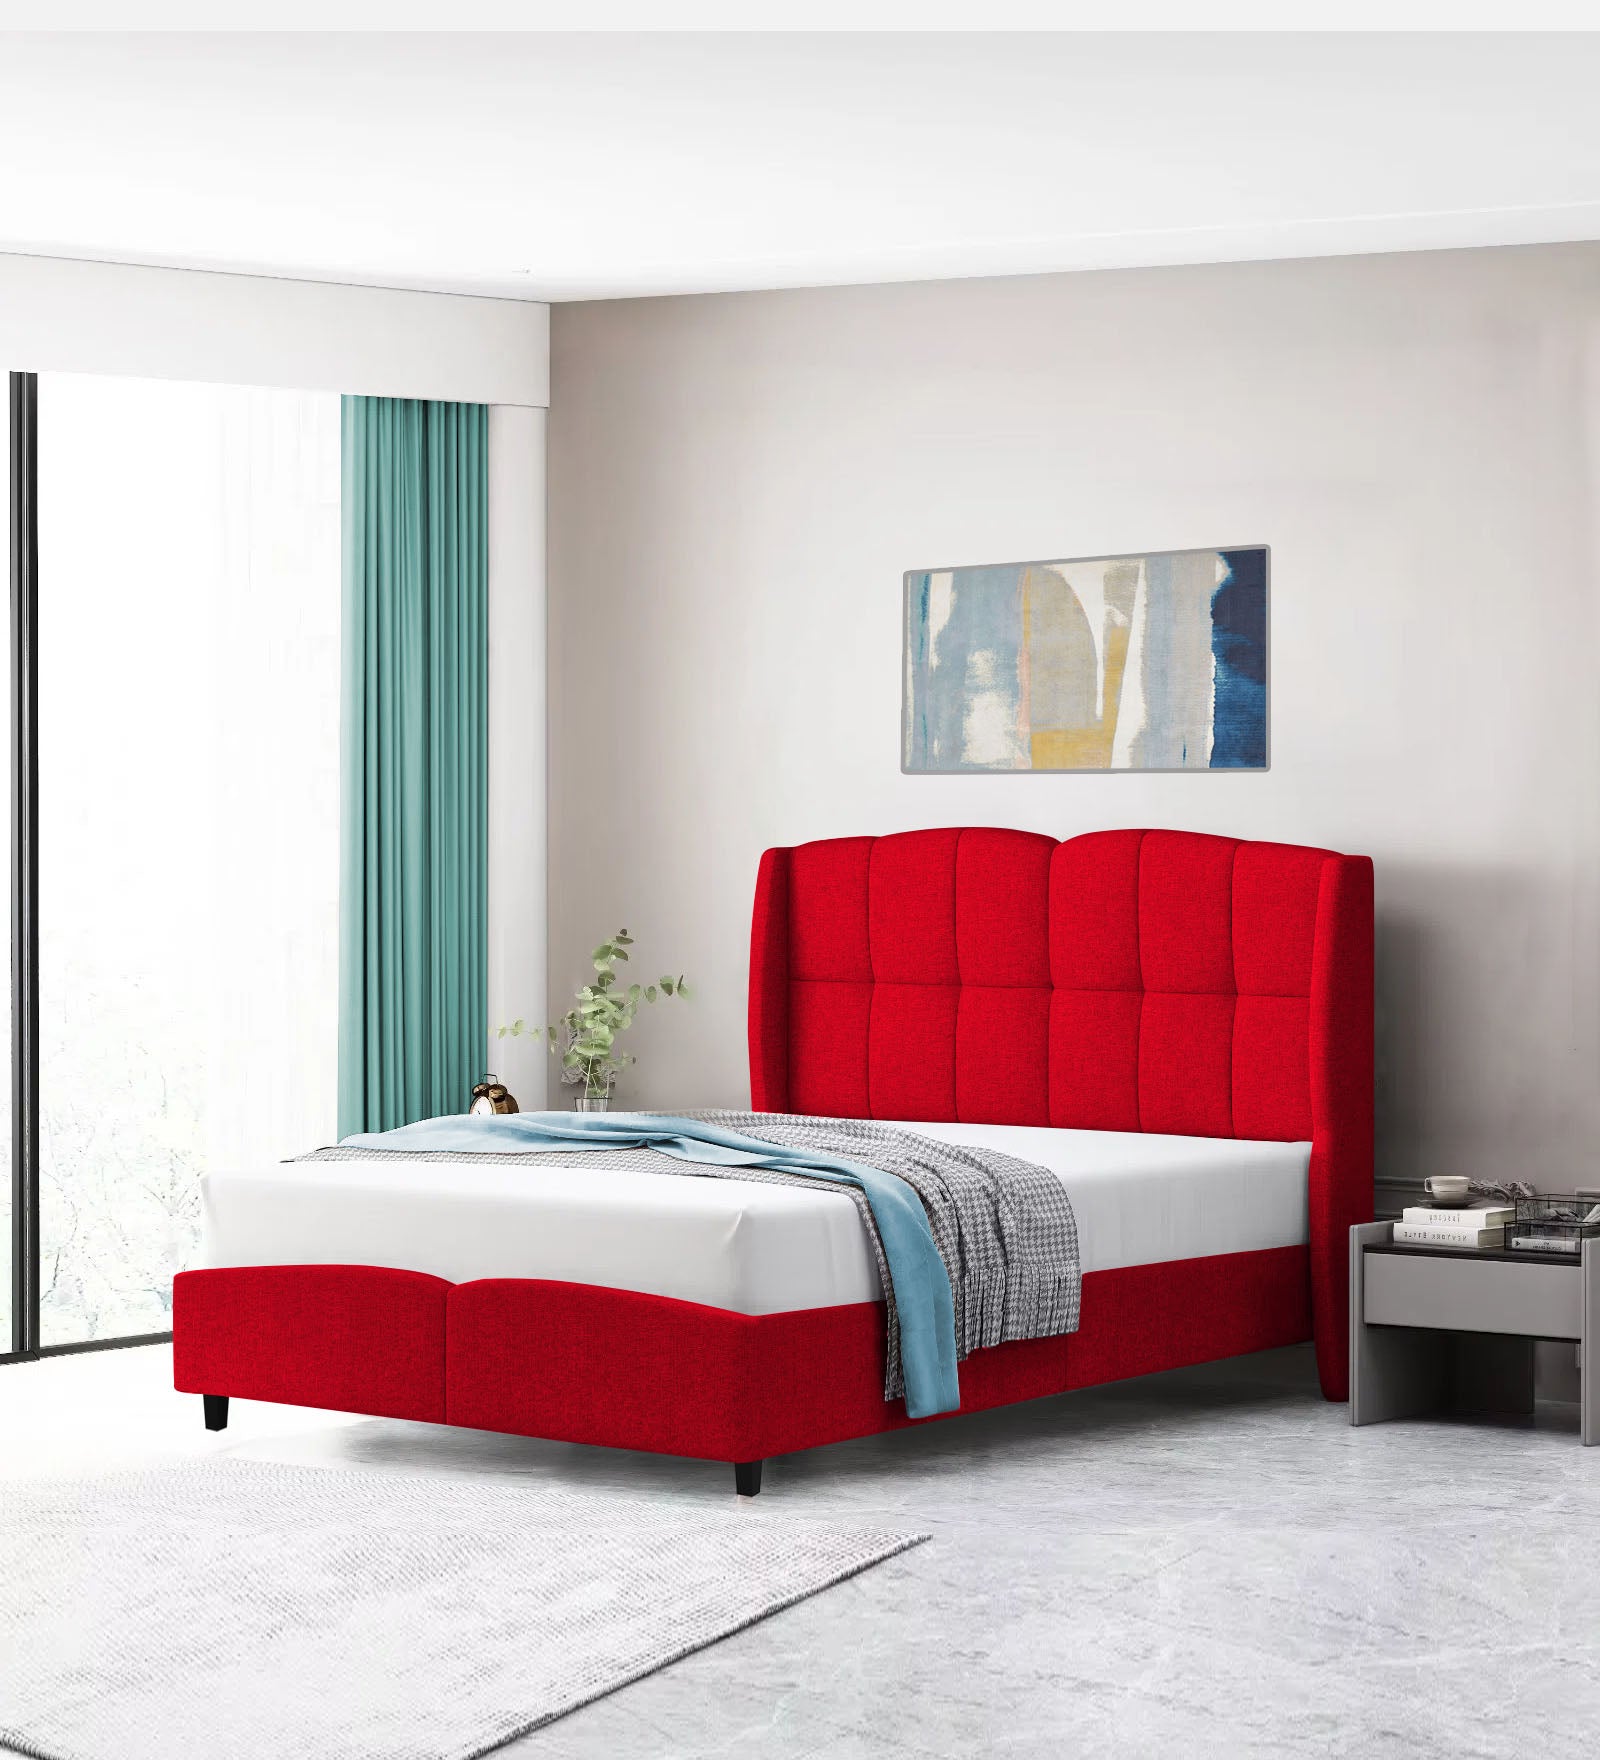 Jovi Velvet Single Size Bed In Cherry Red Colour